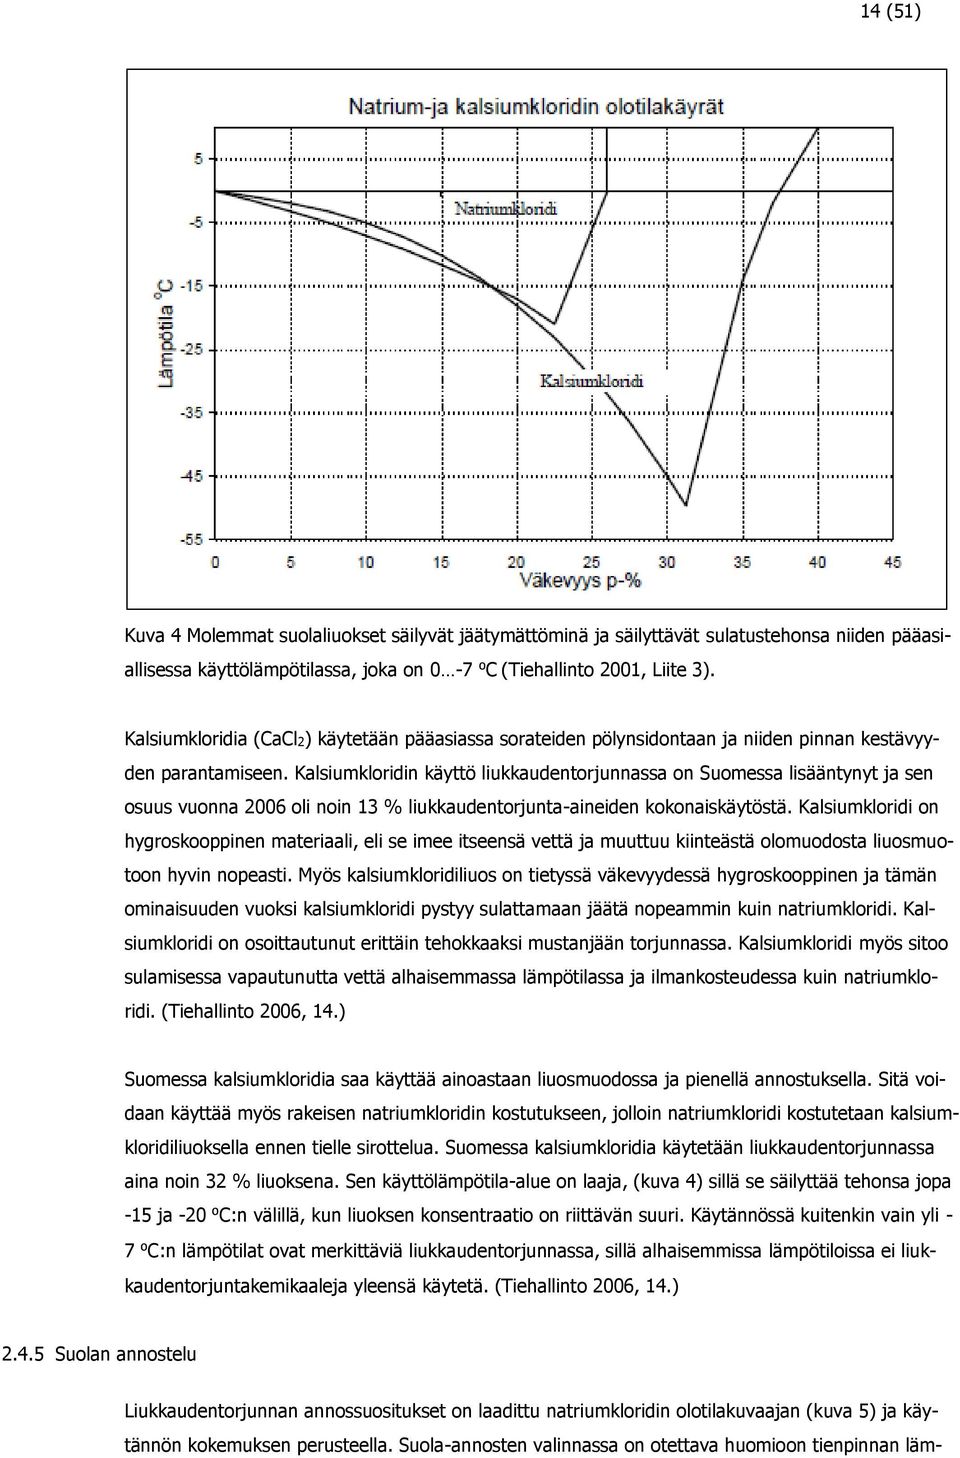 Kalsiumkloridin käyttö liukkaudentorjunnassa on Suomessa lisääntynyt ja sen osuus vuonna 2006 oli noin 13 % liukkaudentorjunta-aineiden kokonaiskäytöstä.